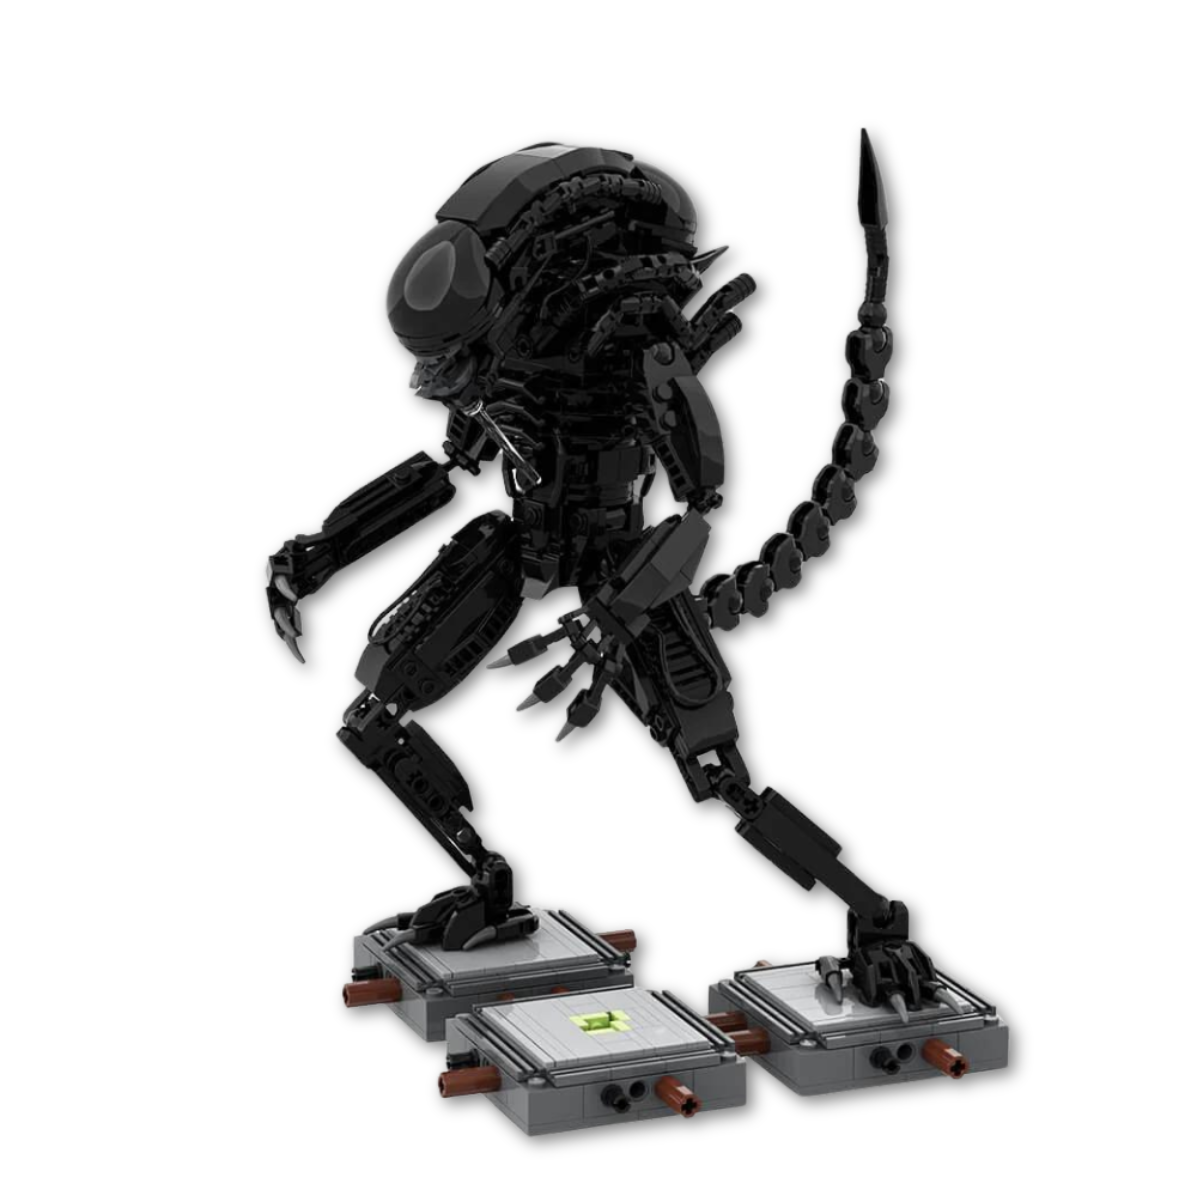 LEGO Alien Xenomorph